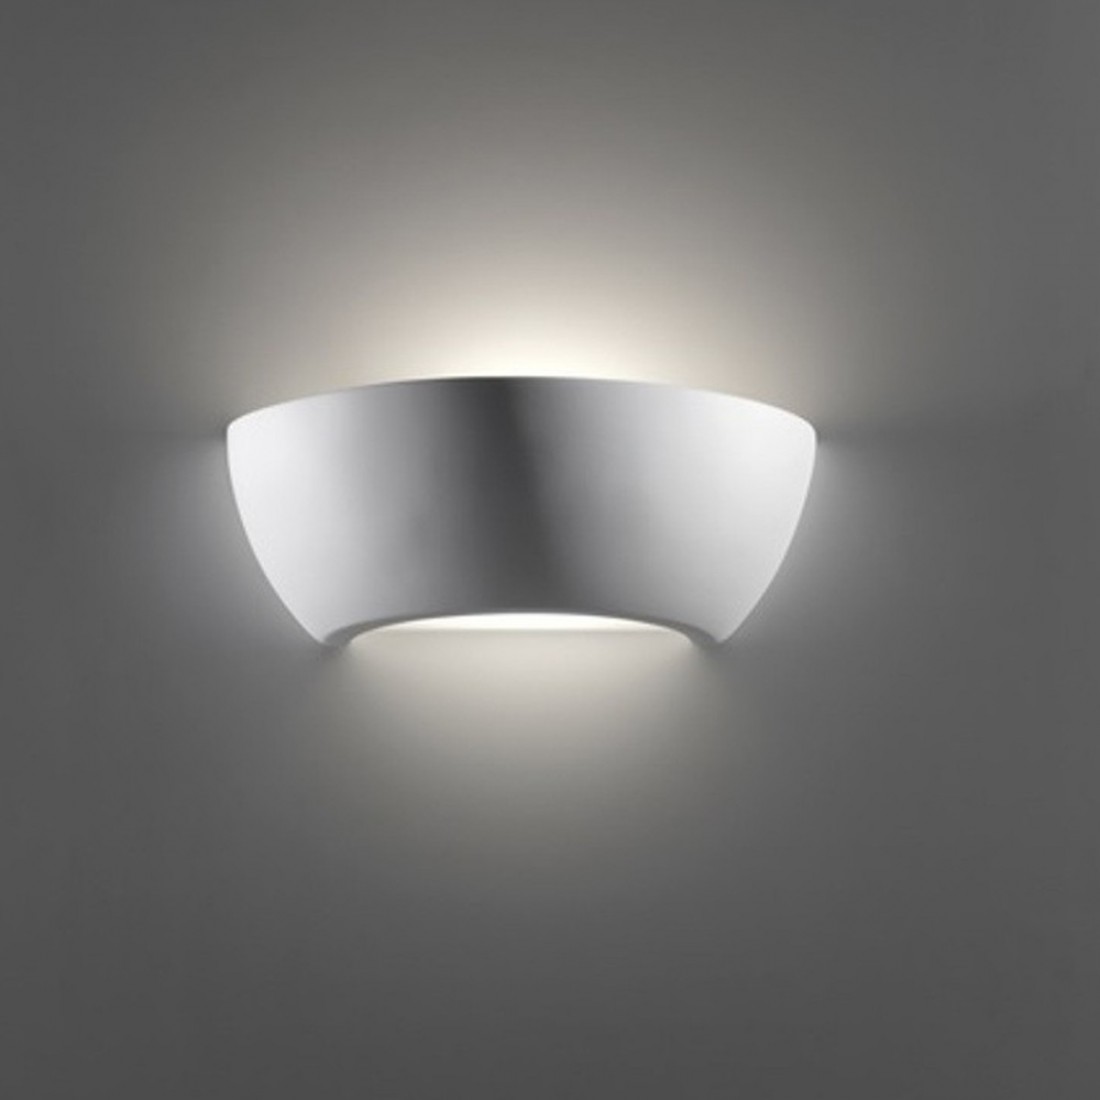 Applique BF-8254 E27 LED gesso bianco biemissione lampada parete vetro dipingere interno IP20